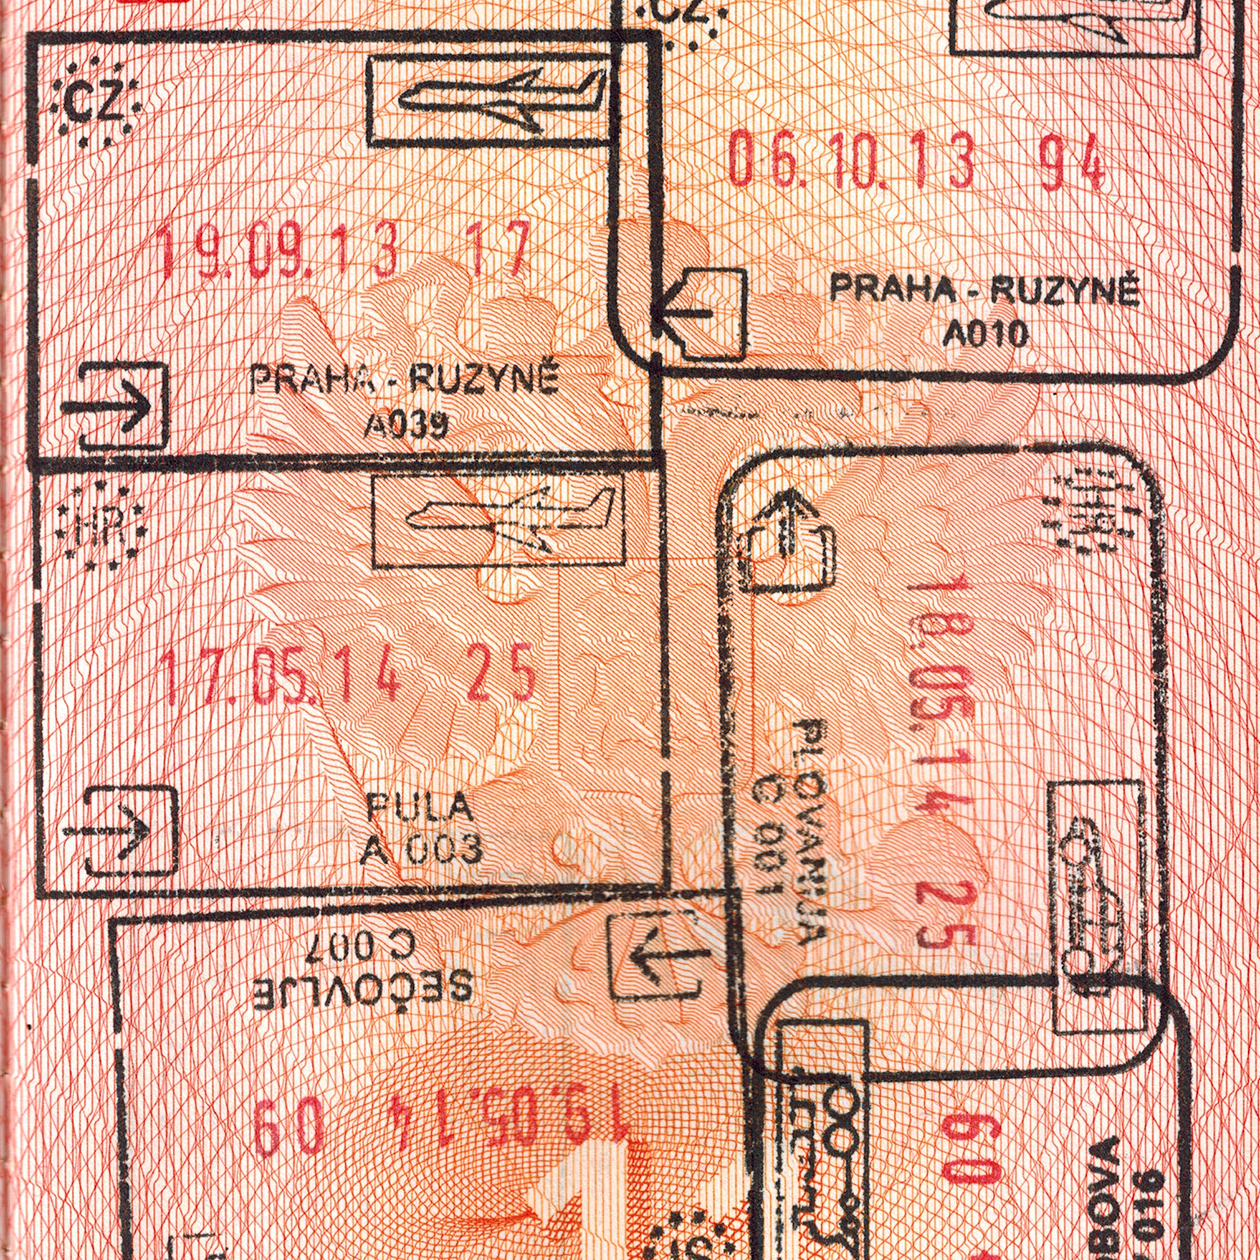 Как оформить и получить загранпаспорт в Перми: документы, требования, сервисы